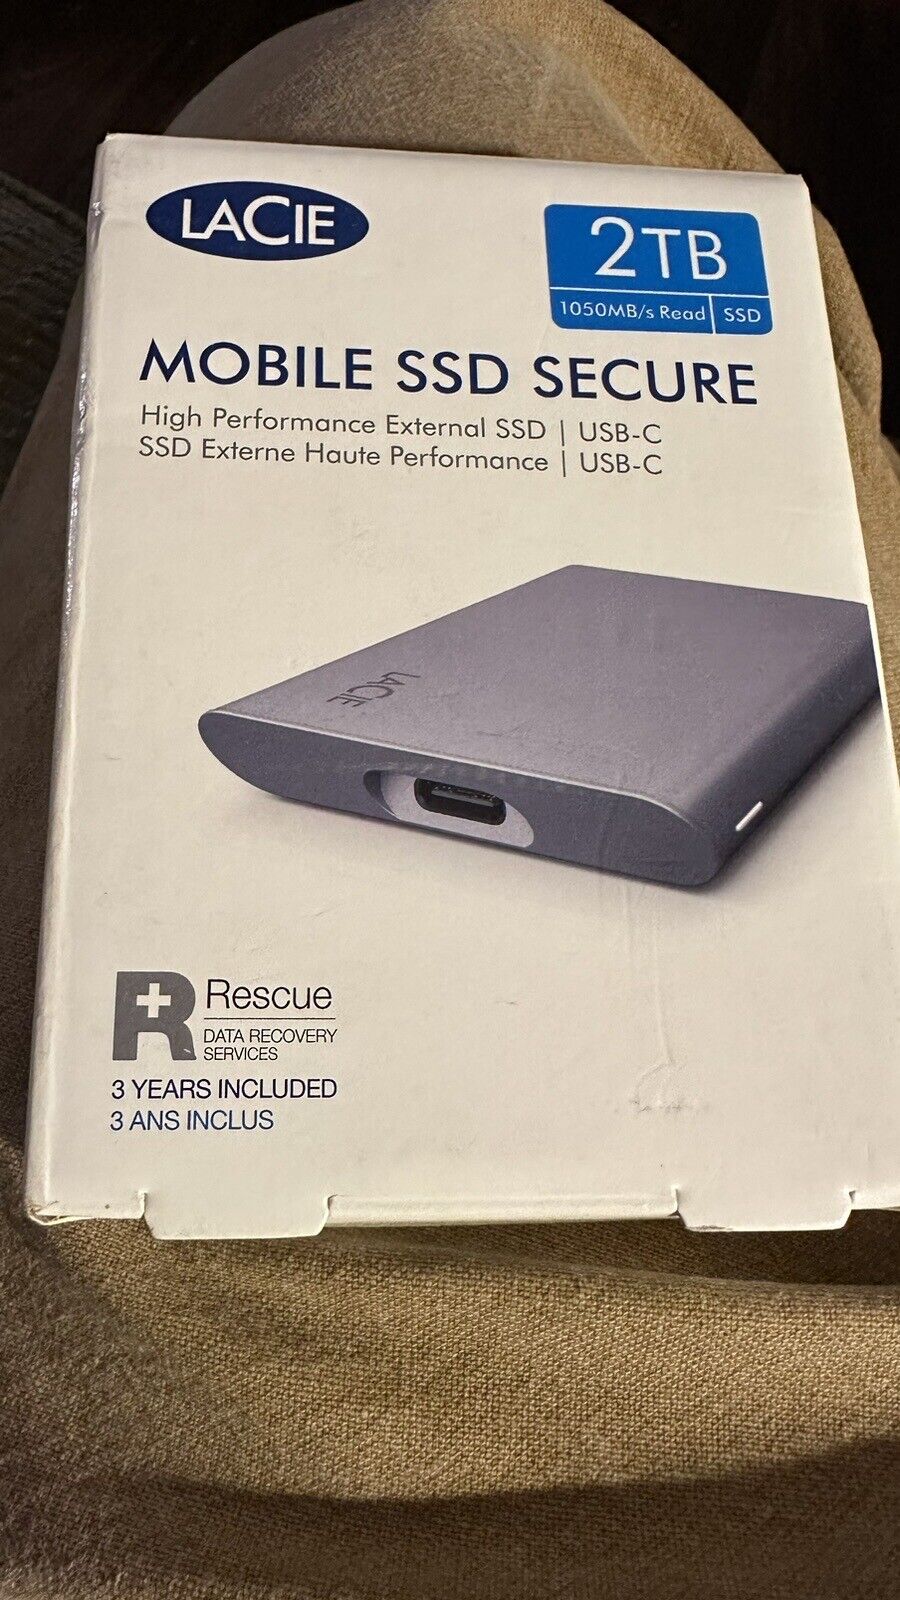 LaCie 2TB Mobile SSD Secure, External drive, USB-C connect